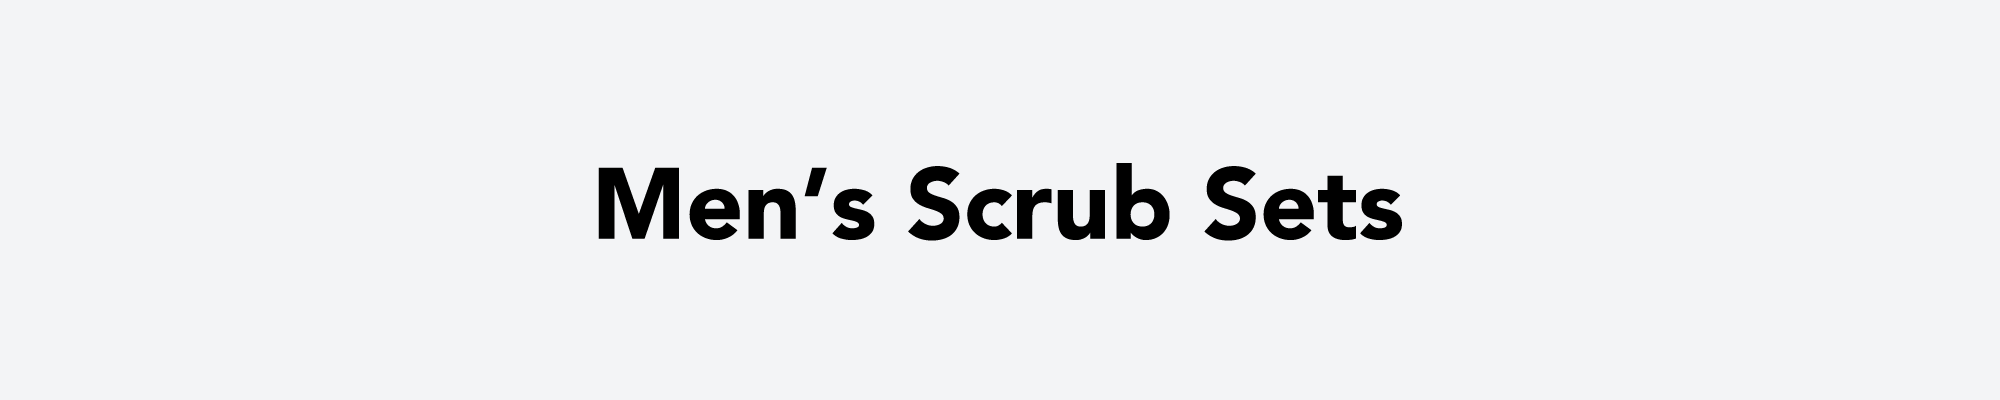 Men's Scrub Sets